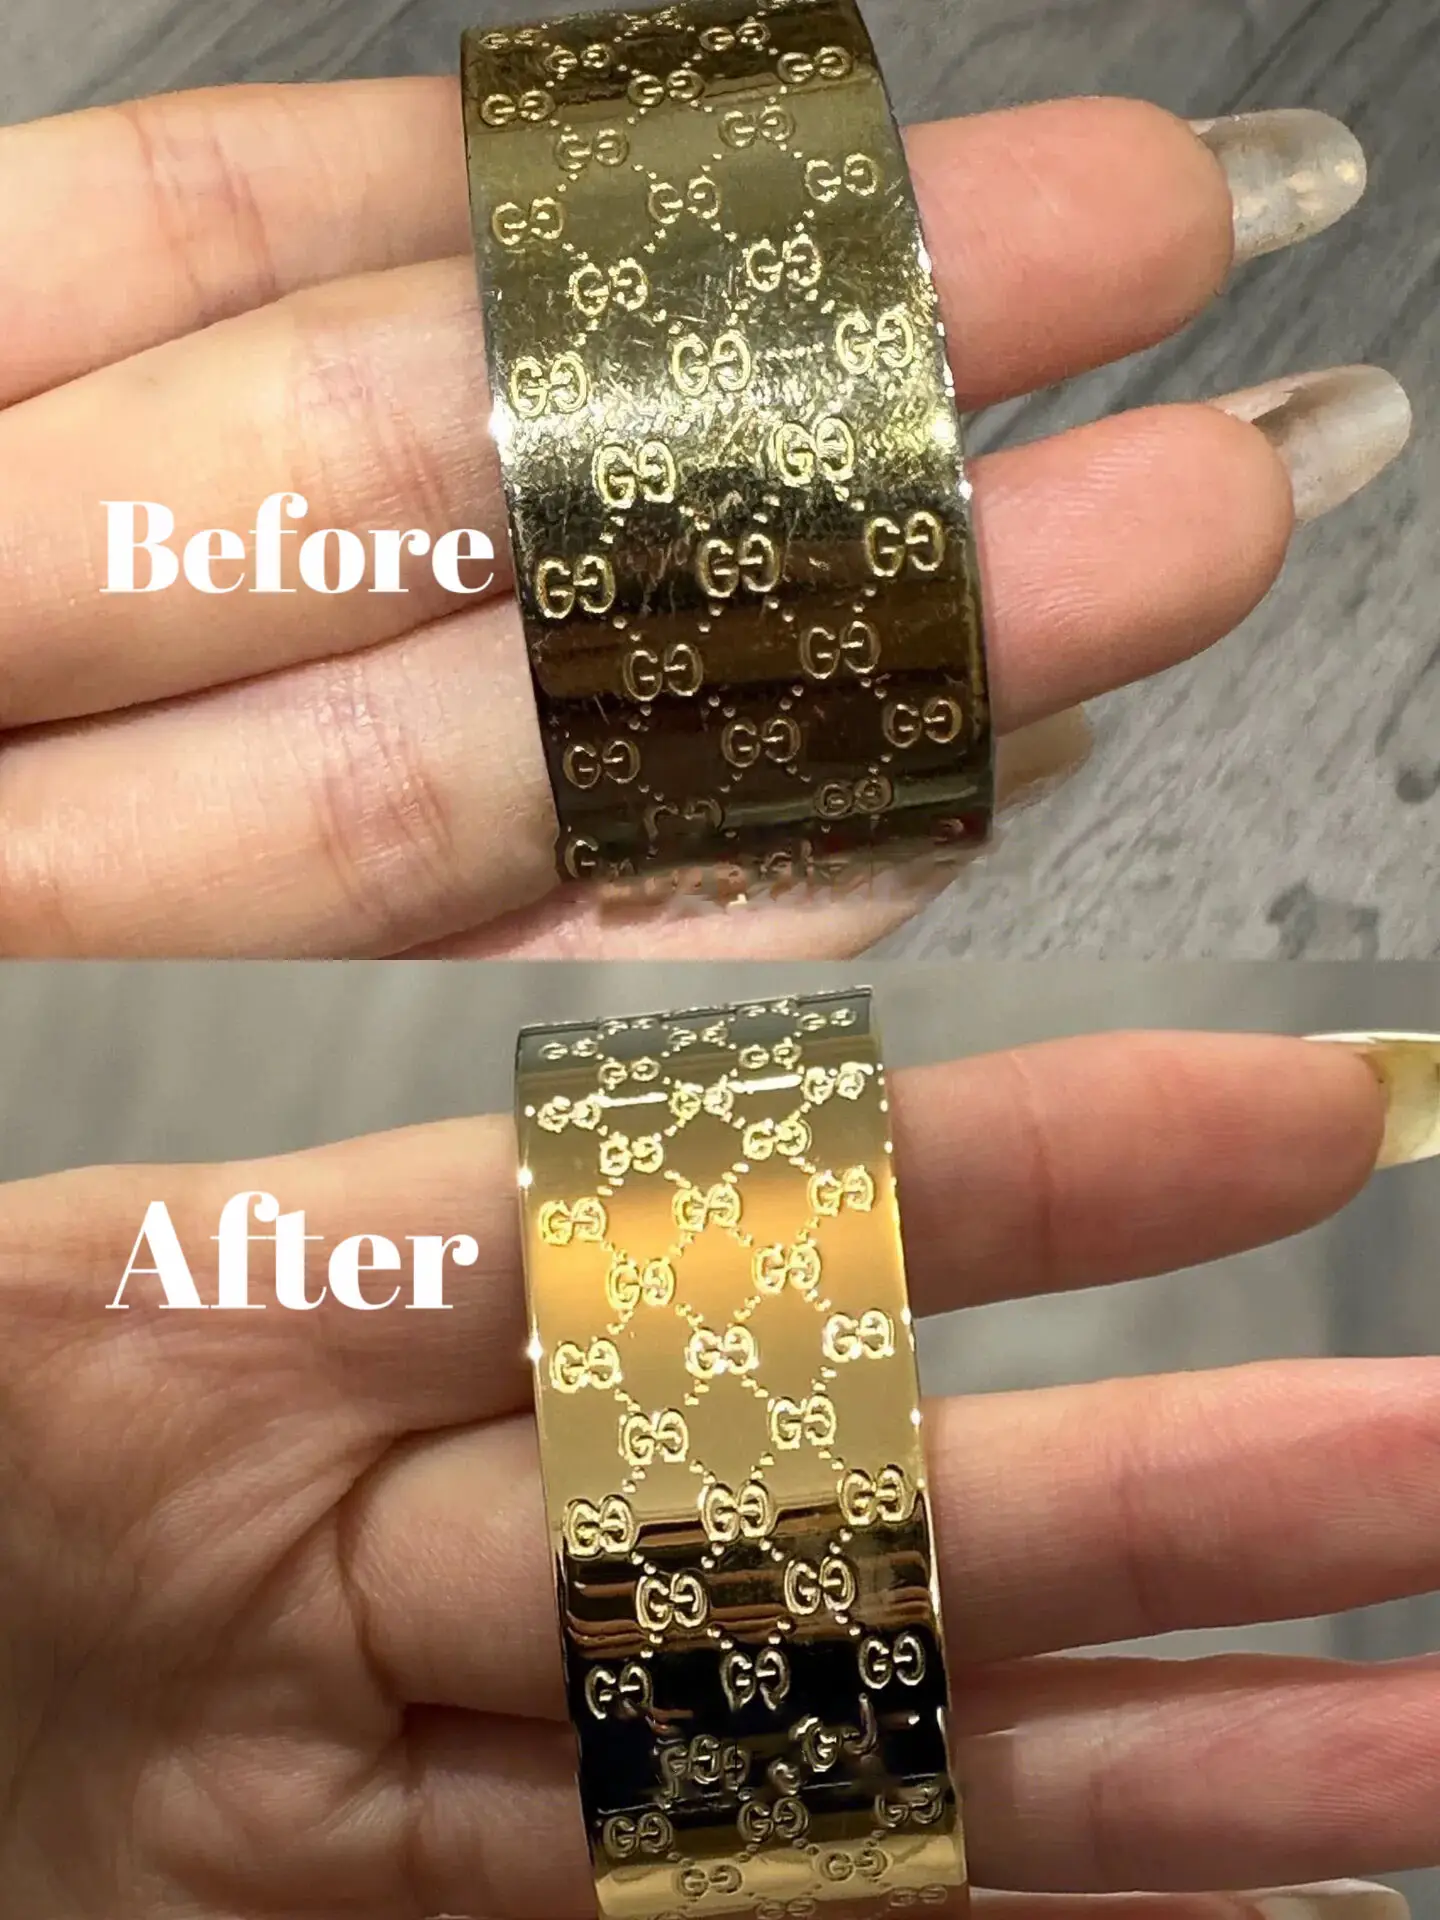 Restoring Gucci belt buckle : r/electroplating